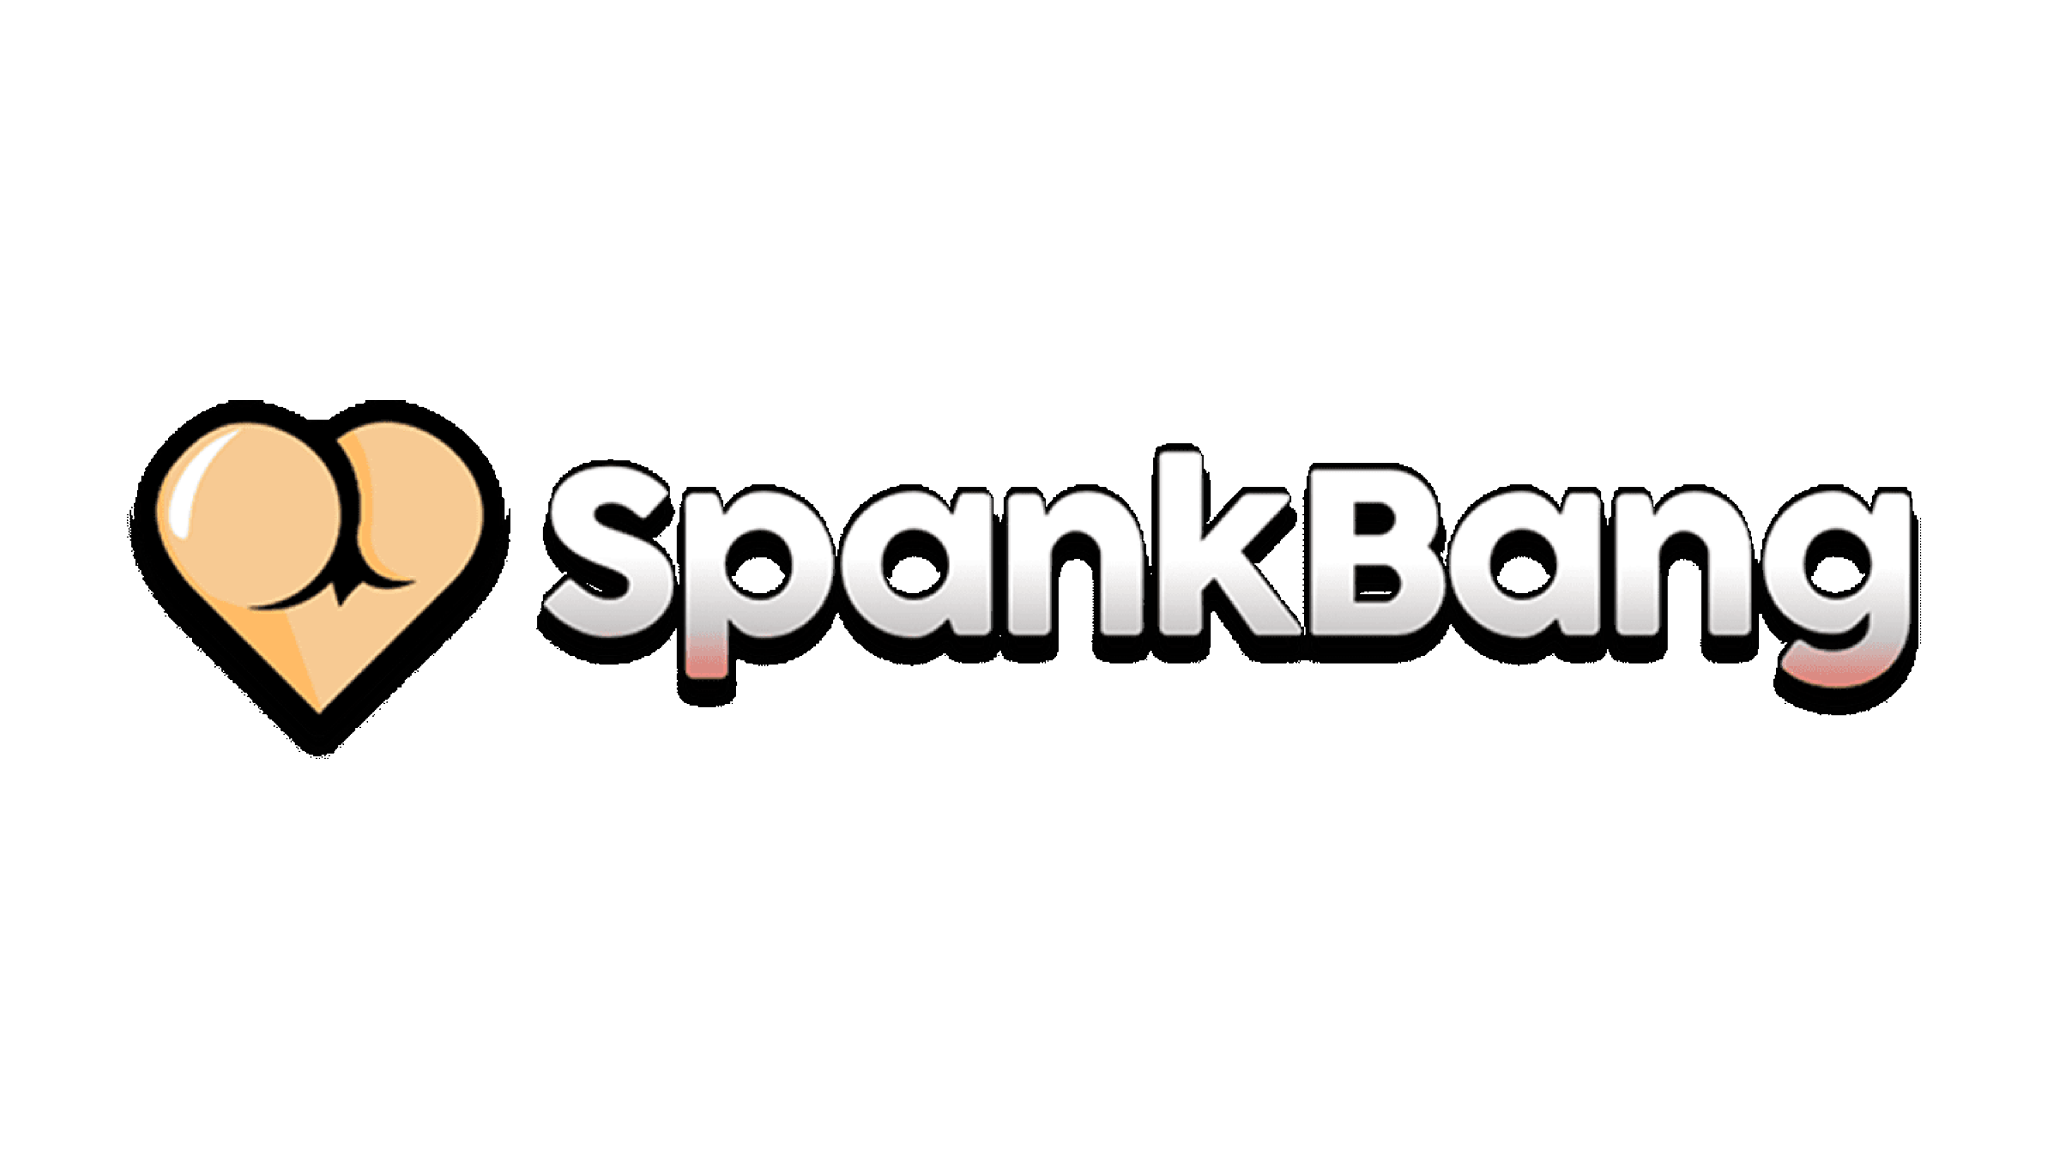 SpankBang logo.